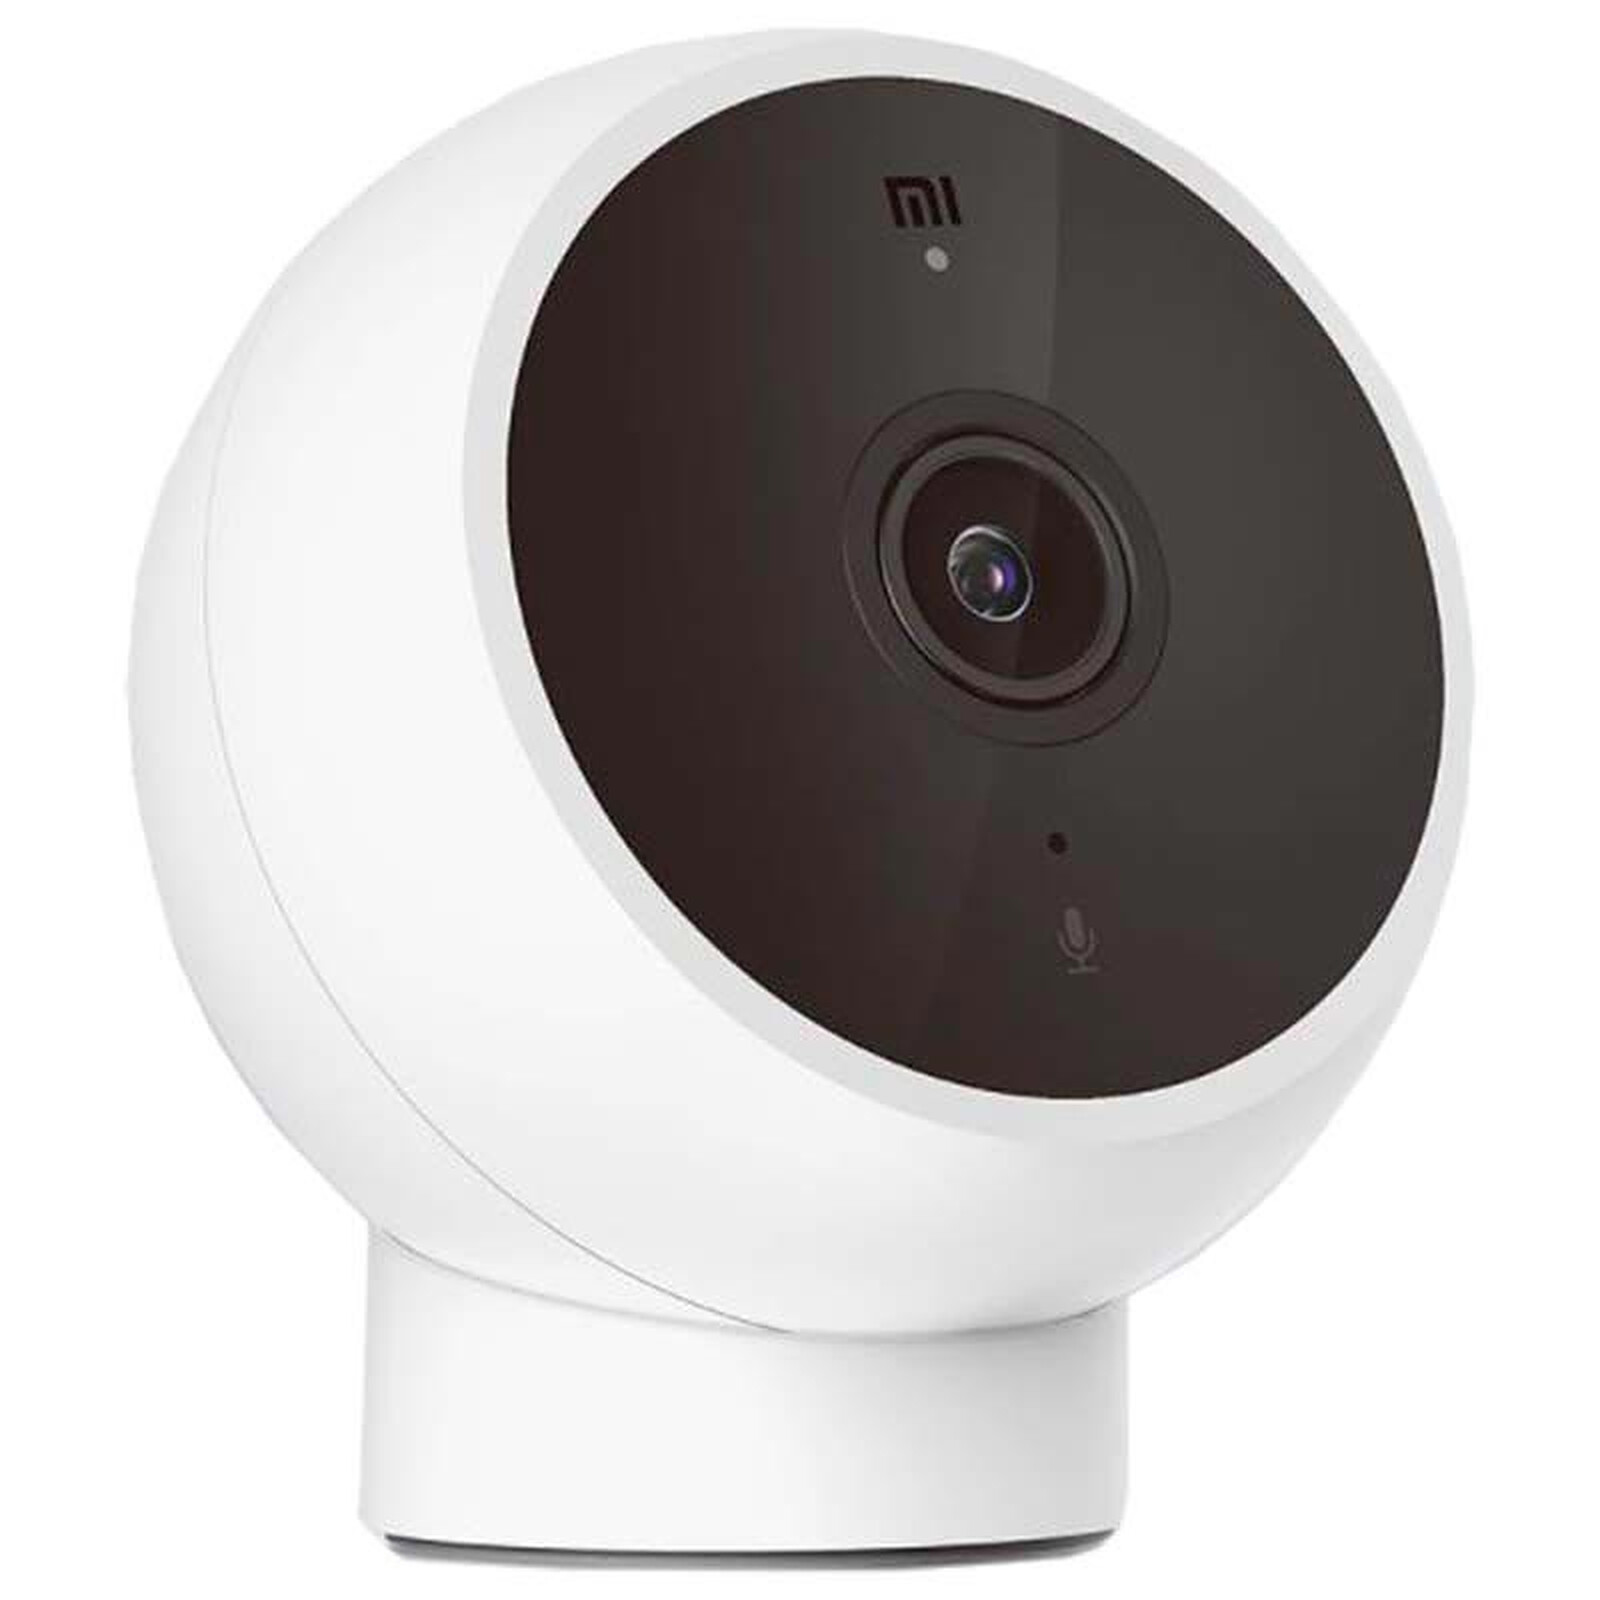 TP-LINK Tapo C200 - Caméra de surveillance - Garantie 3 ans LDLC